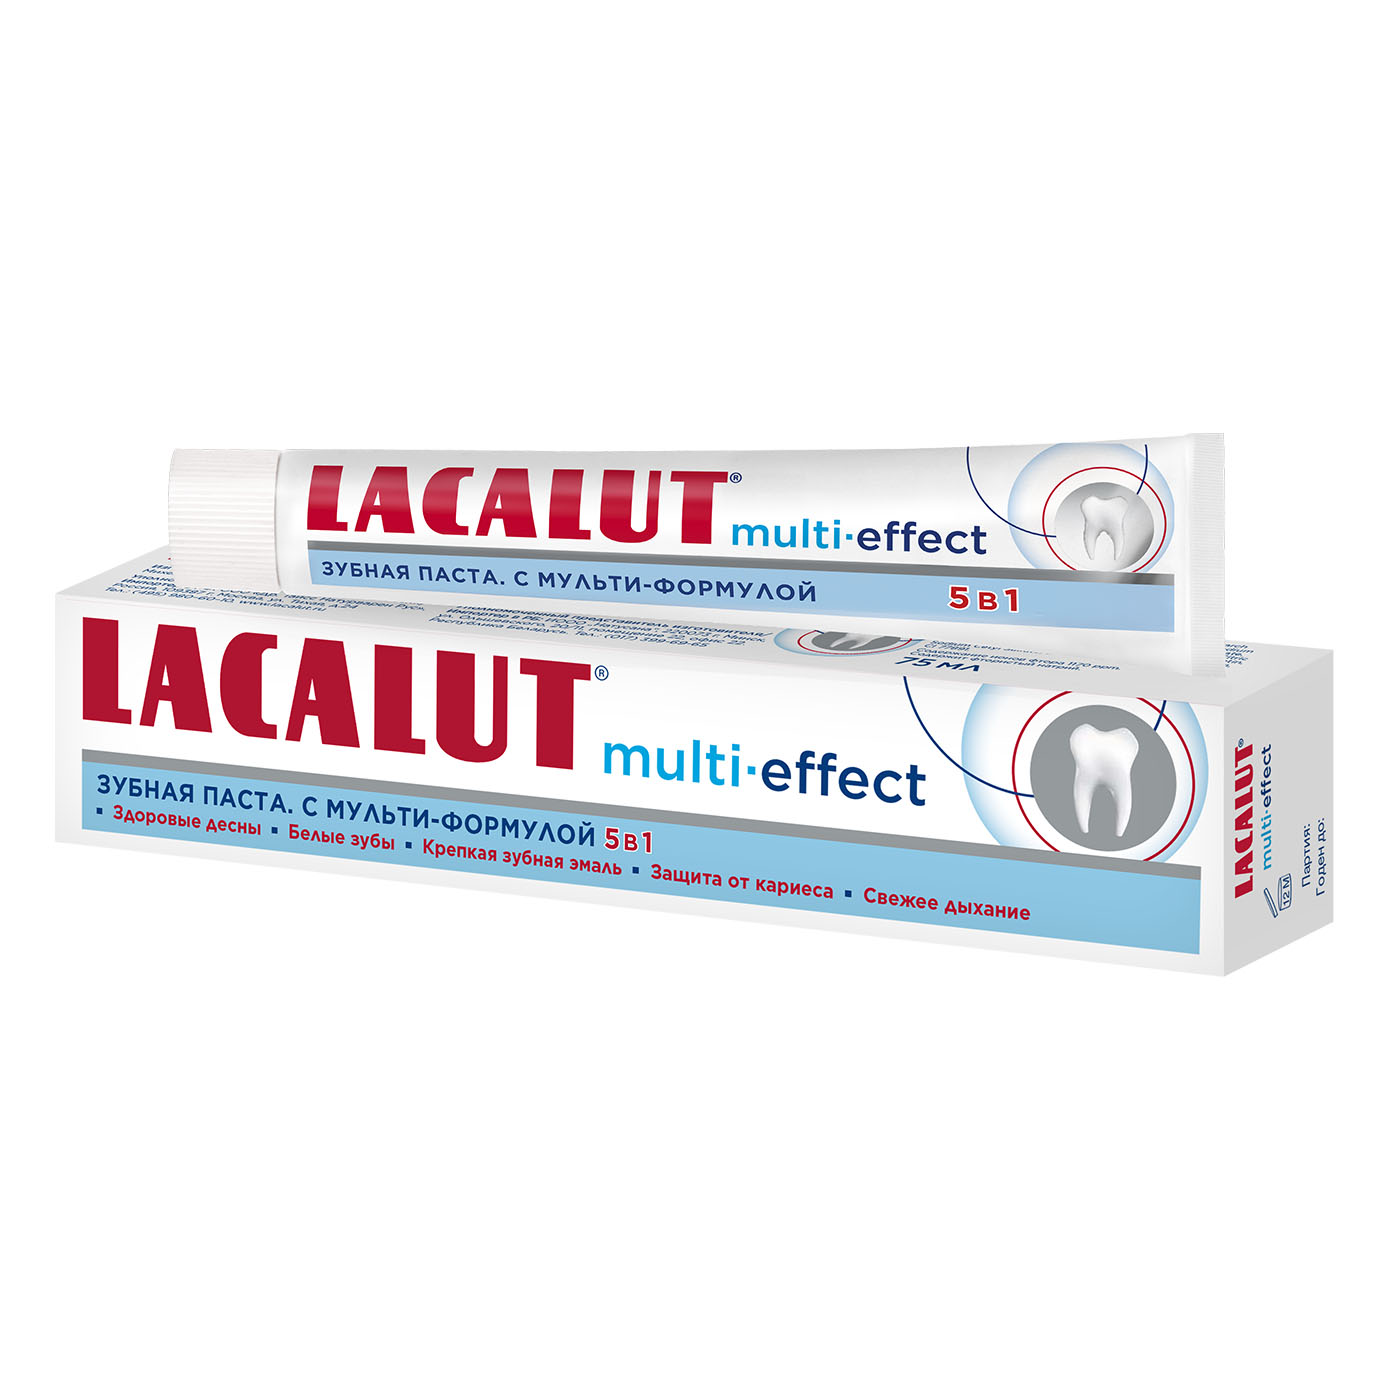 Lacalut Зубная паста Мульти-эффект 75 мл (Lacalut, Зубные па